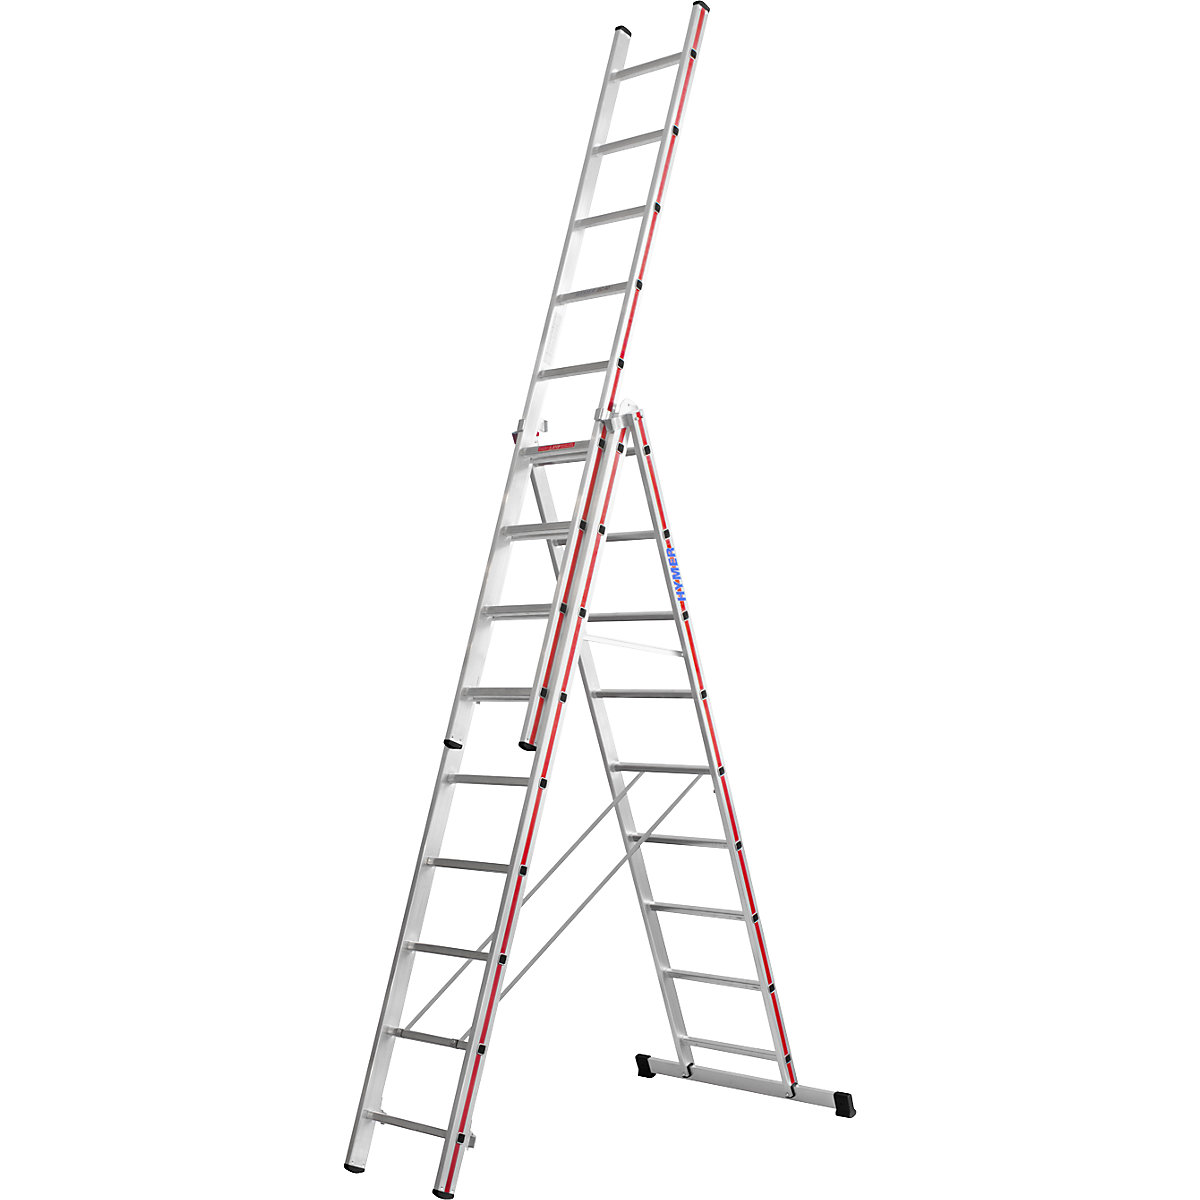 Aluminijasta večnamenska lestev – HYMER, profesionalna izvedba, 3 x 9 klinov, maks. delovna višina 7,39 m-11